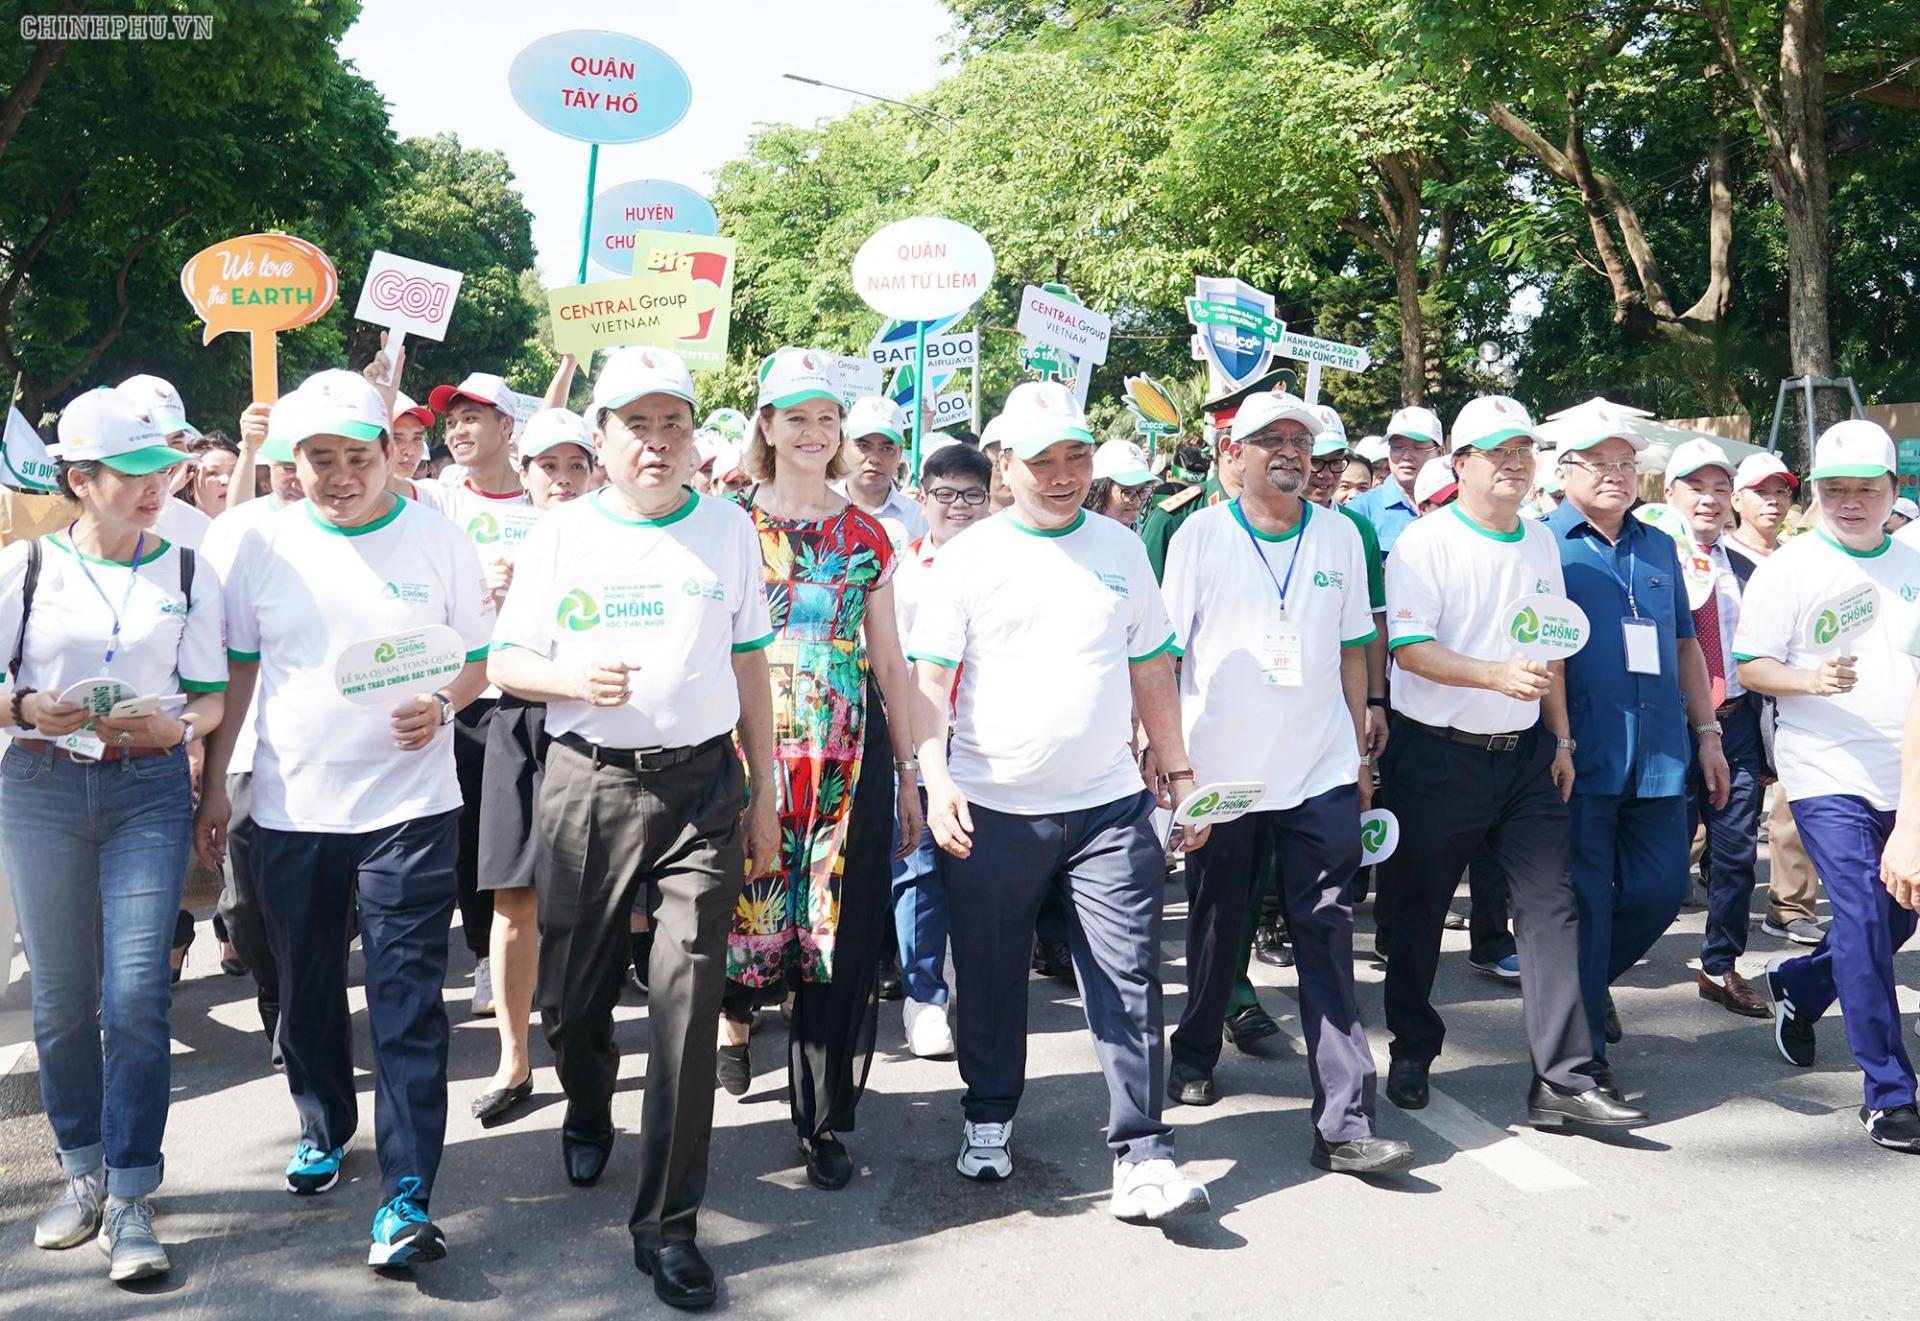 Thủ tướng và các đại biểu đi bộ đồng hành tại phố đi bộ khu vực Bờ hồ Hoàn Kiếm để cổ vũ, hưởng ứng phong trào chống rác thải nhựa.